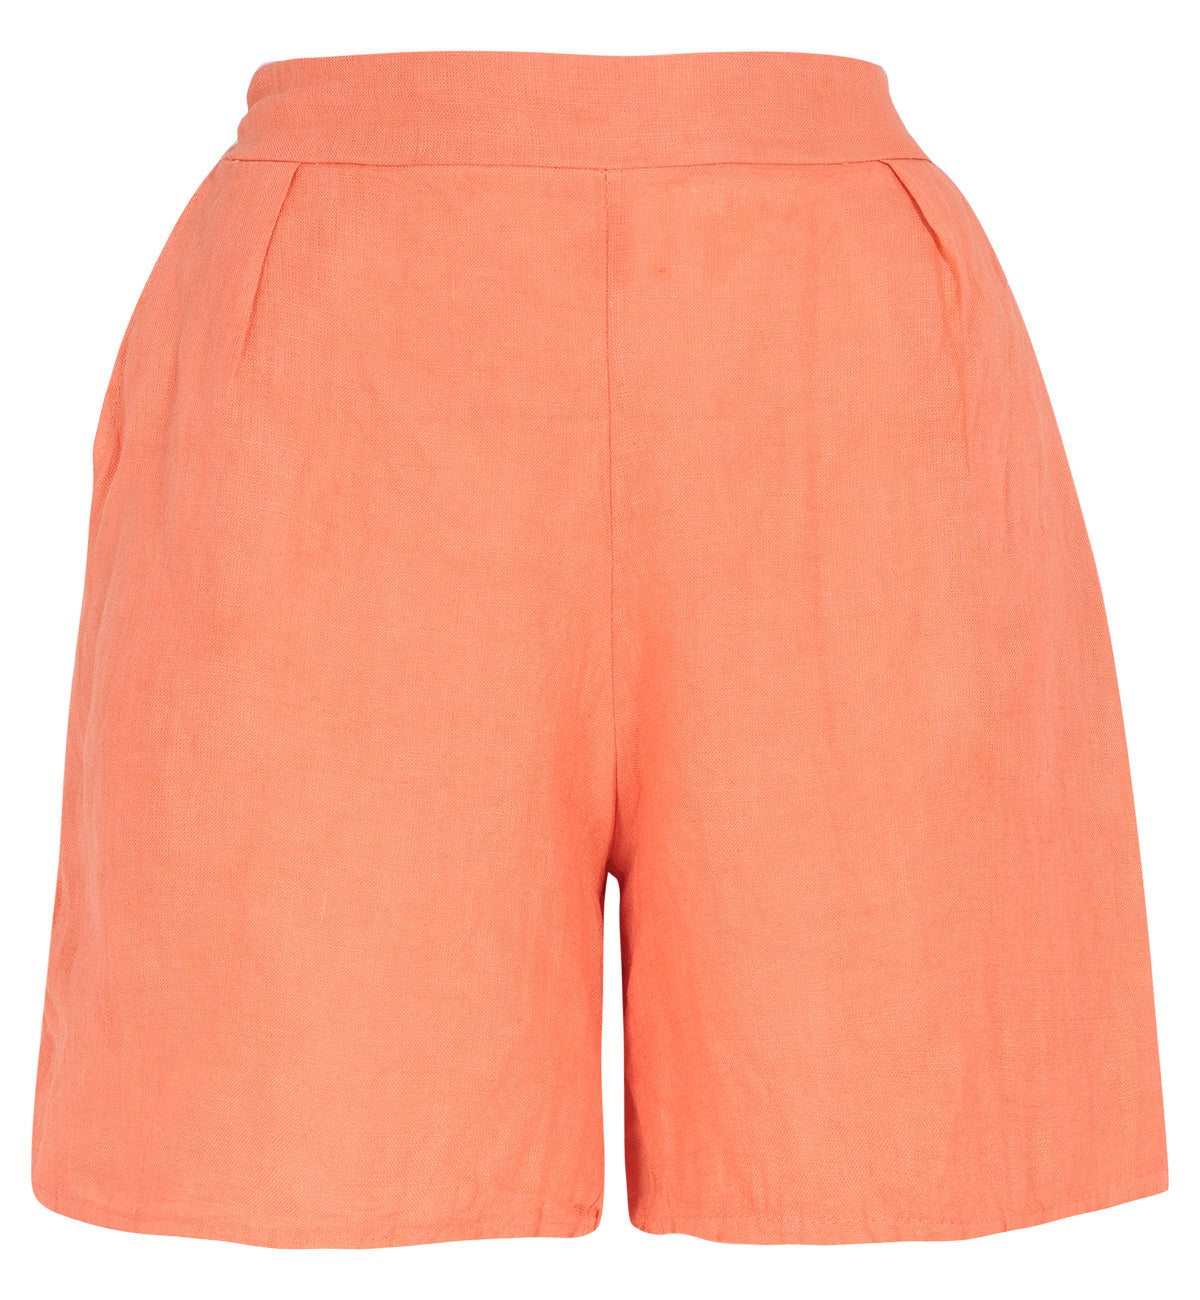 Hello Summer Short - Orange